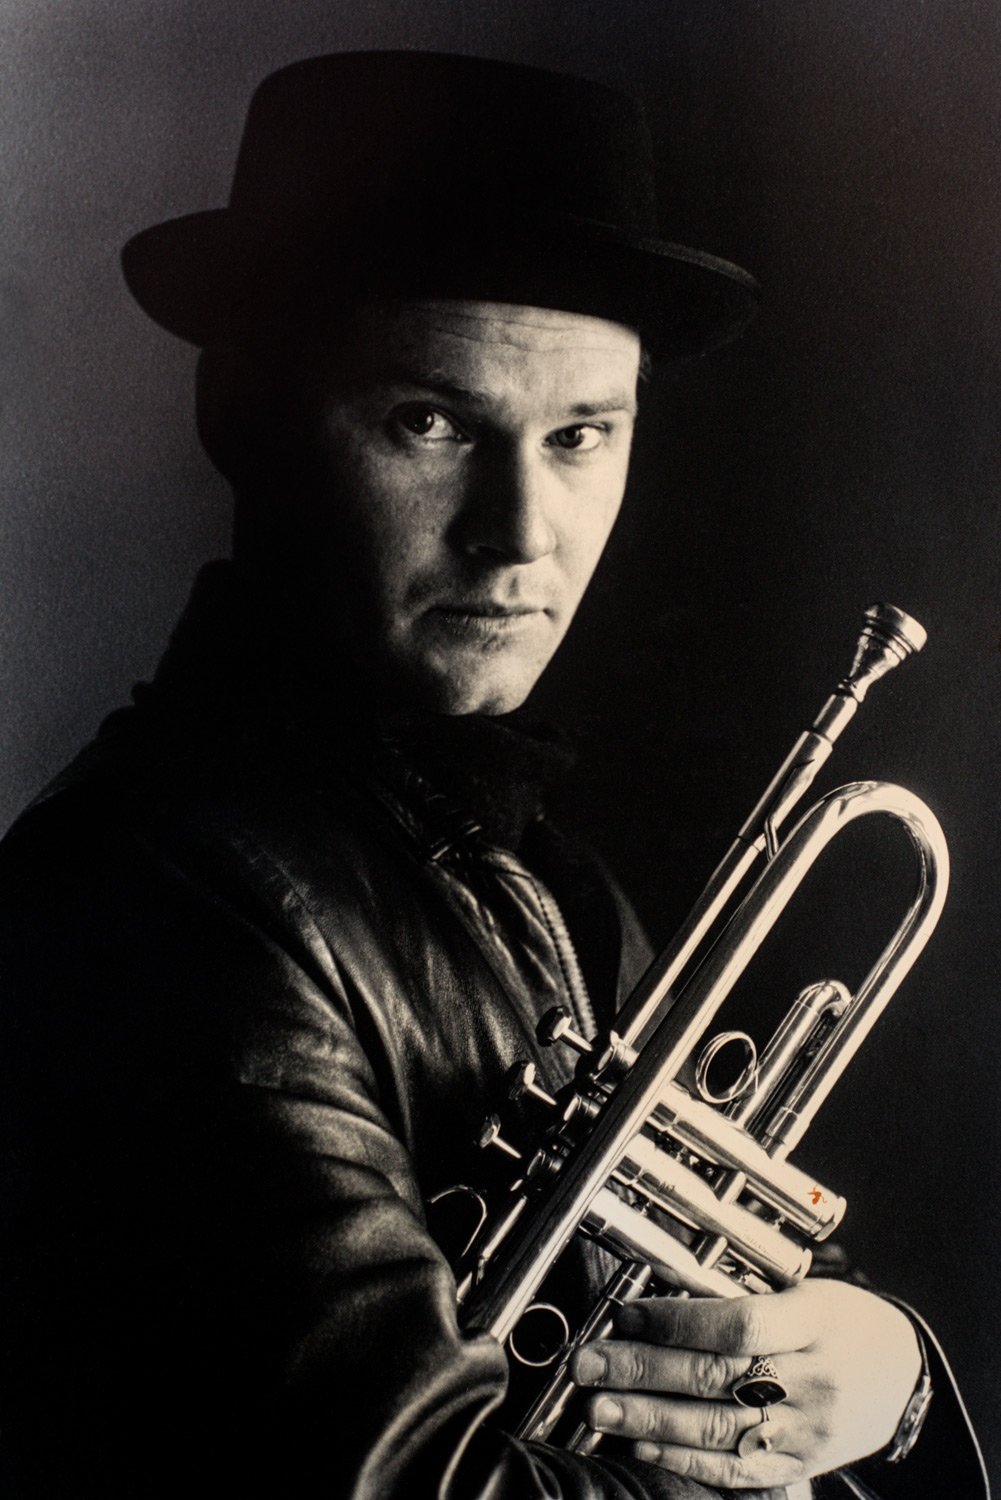 Portfolio of KevinLJ © Kevin Landwer-Johan Trumpet Player Portrait